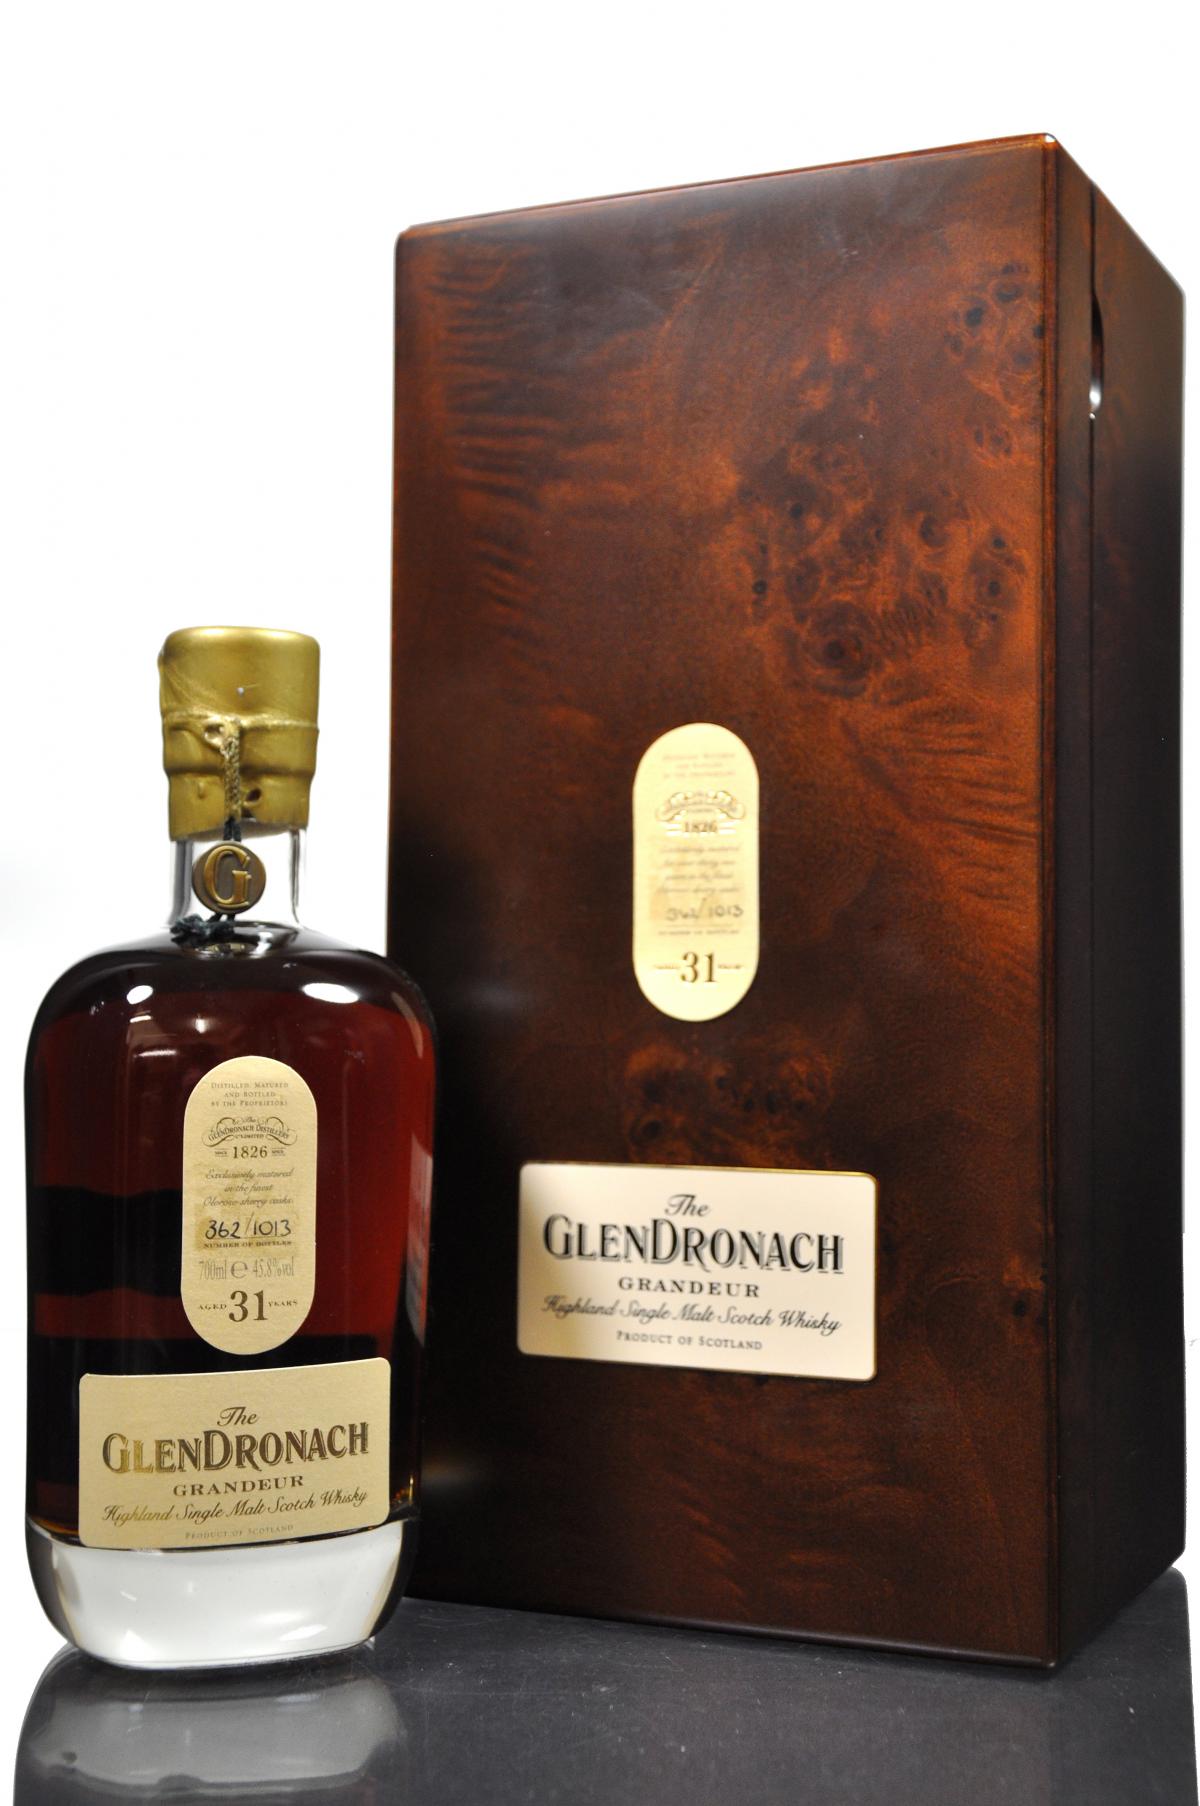 Glendronach 31 Year Old - Grandeur